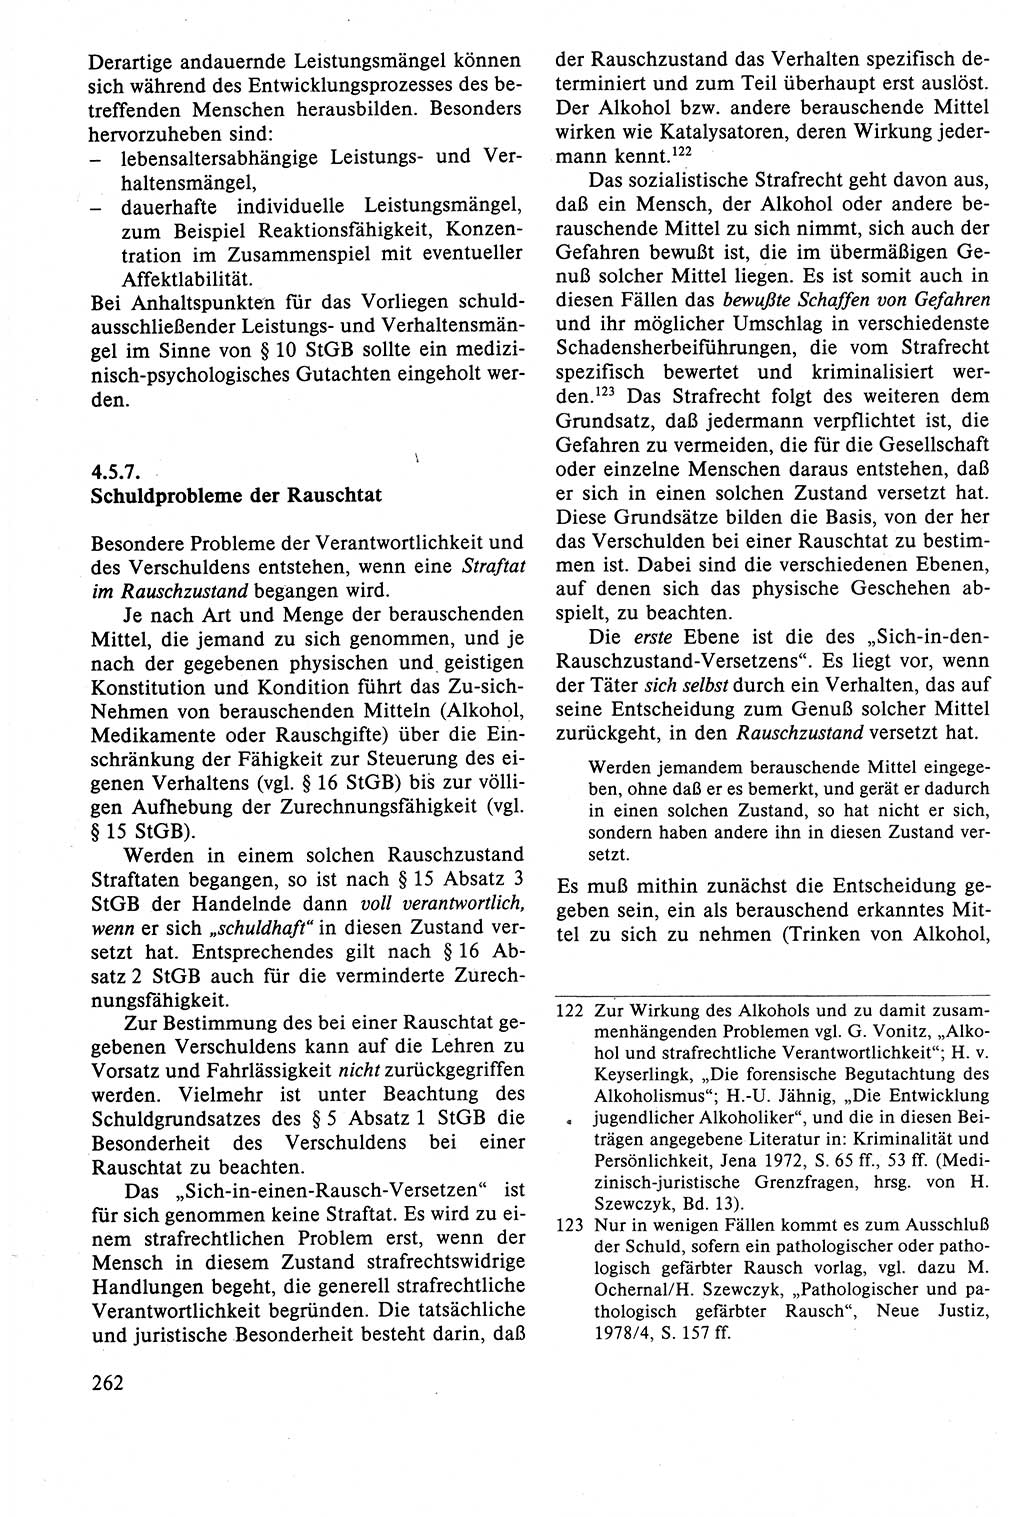 Strafrecht der DDR (Deutsche Demokratische Republik), Lehrbuch 1988, Seite 262 (Strafr. DDR Lb. 1988, S. 262)